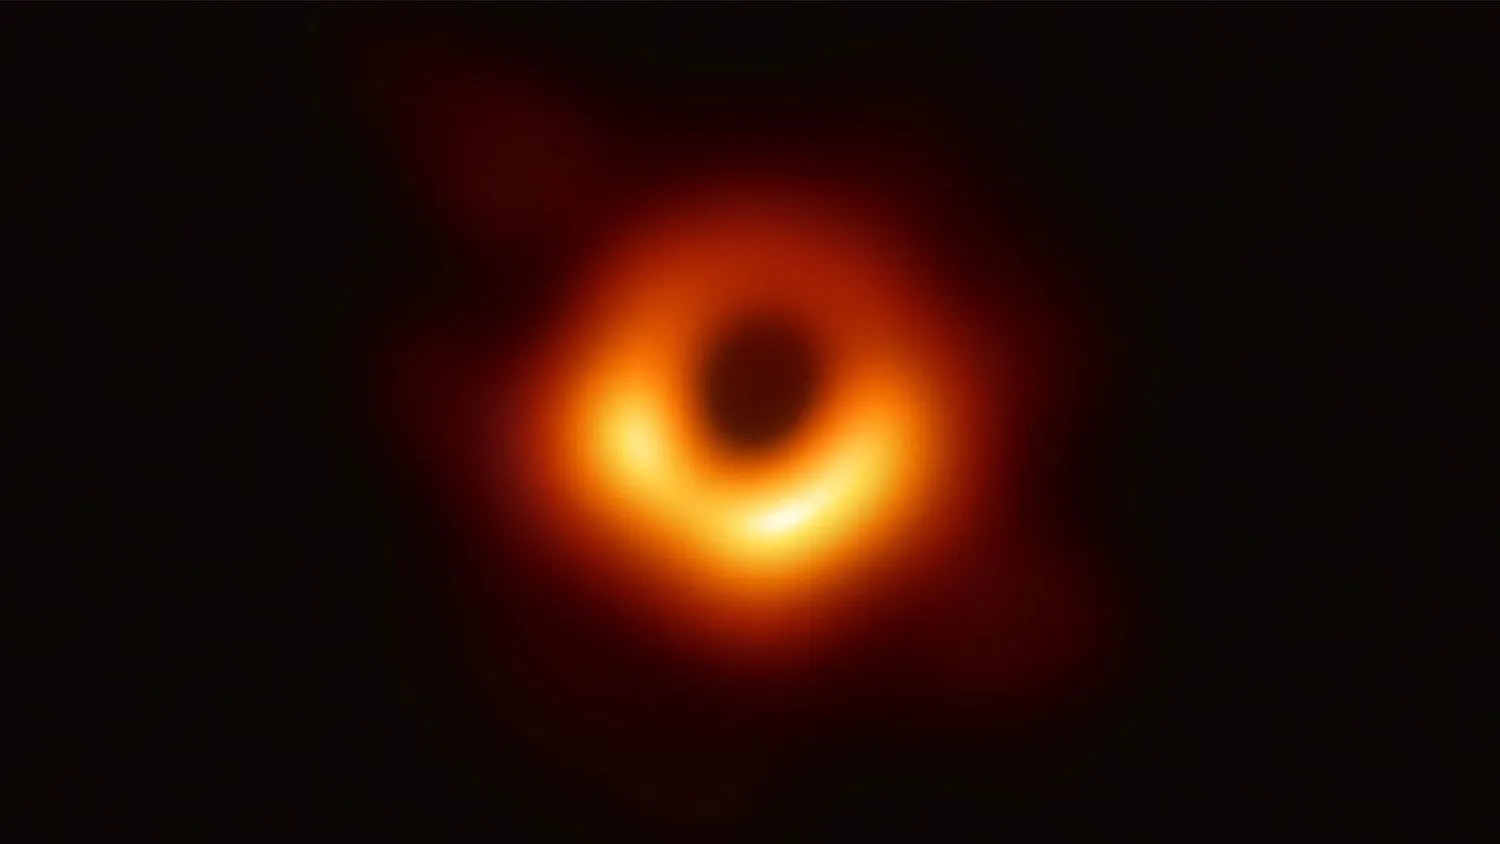 Das Event Horizon Telescope, ein planetarisches Array aus acht bodengestützten Radioteleskopen, das in internationaler Zusammenarbeit entstanden ist, hat dieses Bild des supermassiven schwarzen Lochs im Zentrum der Galaxie M87 und seines Schattens aufgenommen.